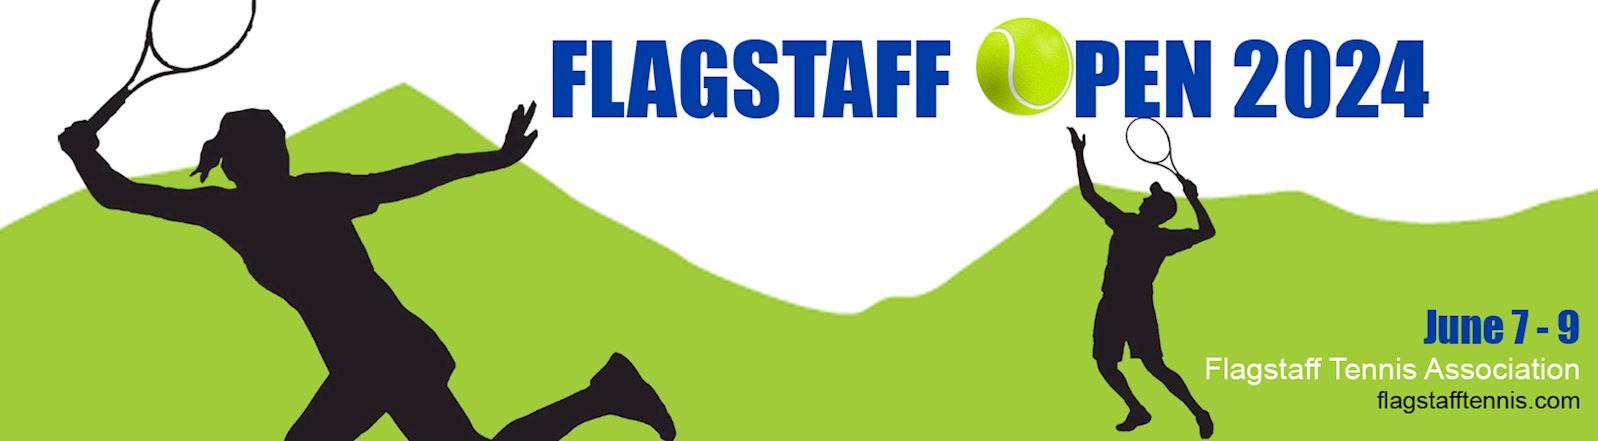 Flagstaff Open 2024: June 7-9